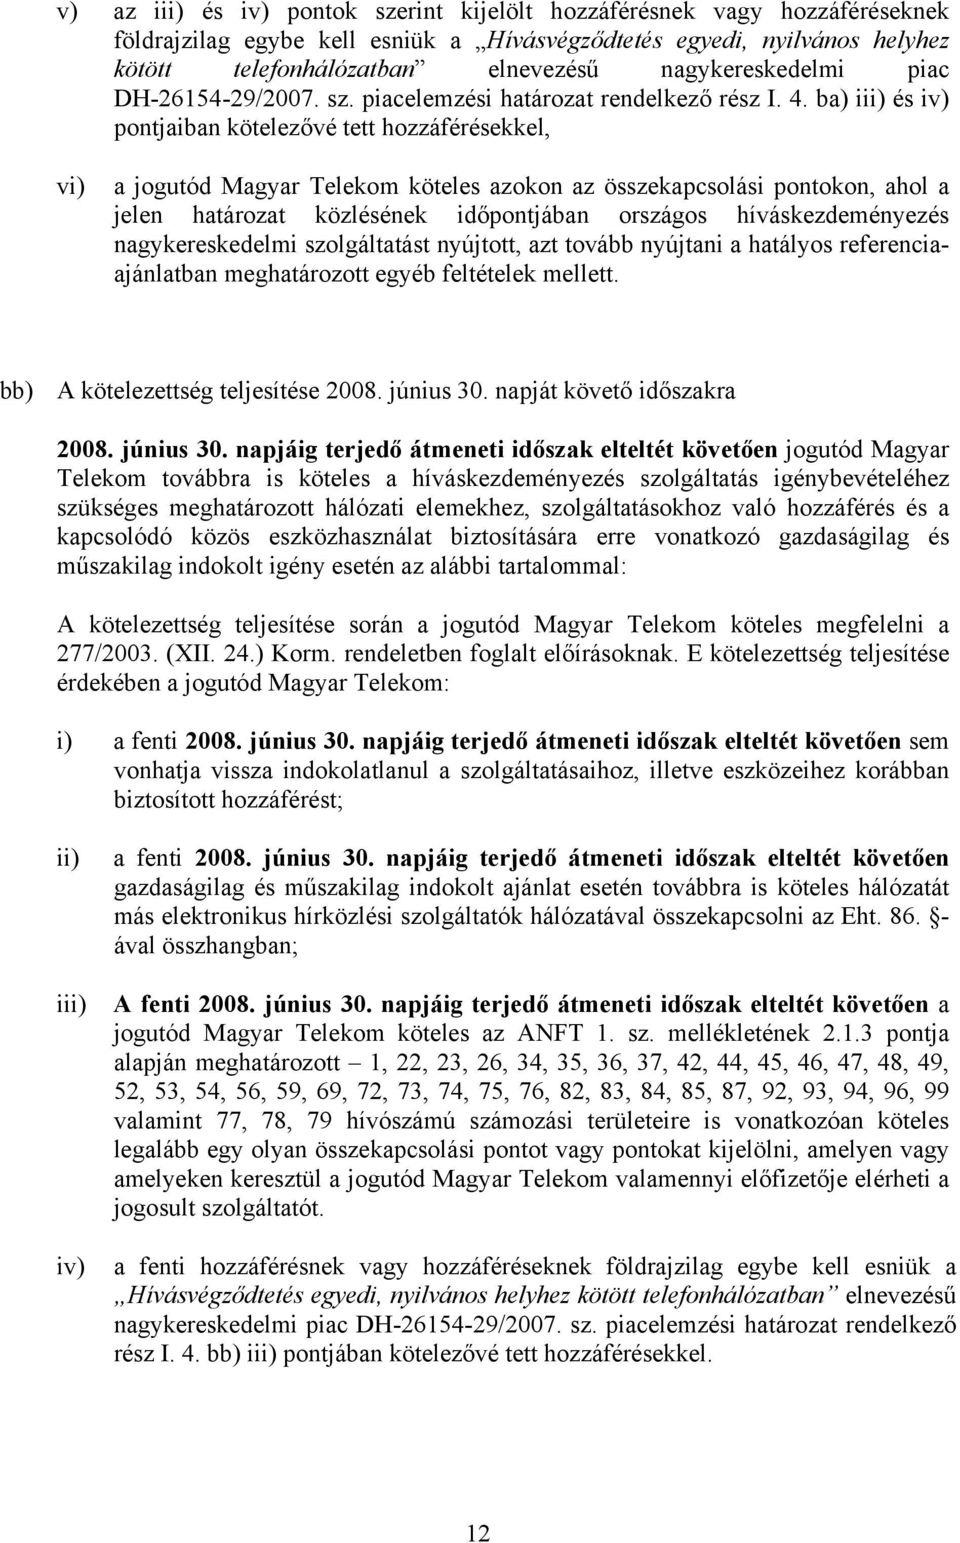 ba) iii) és iv) pontjaiban kötelezővé tett hozzáférésekkel, vi) a jogutód Magyar Telekom köteles azokon az összekapcsolási pontokon, ahol a jelen határozat közlésének időpontjában országos